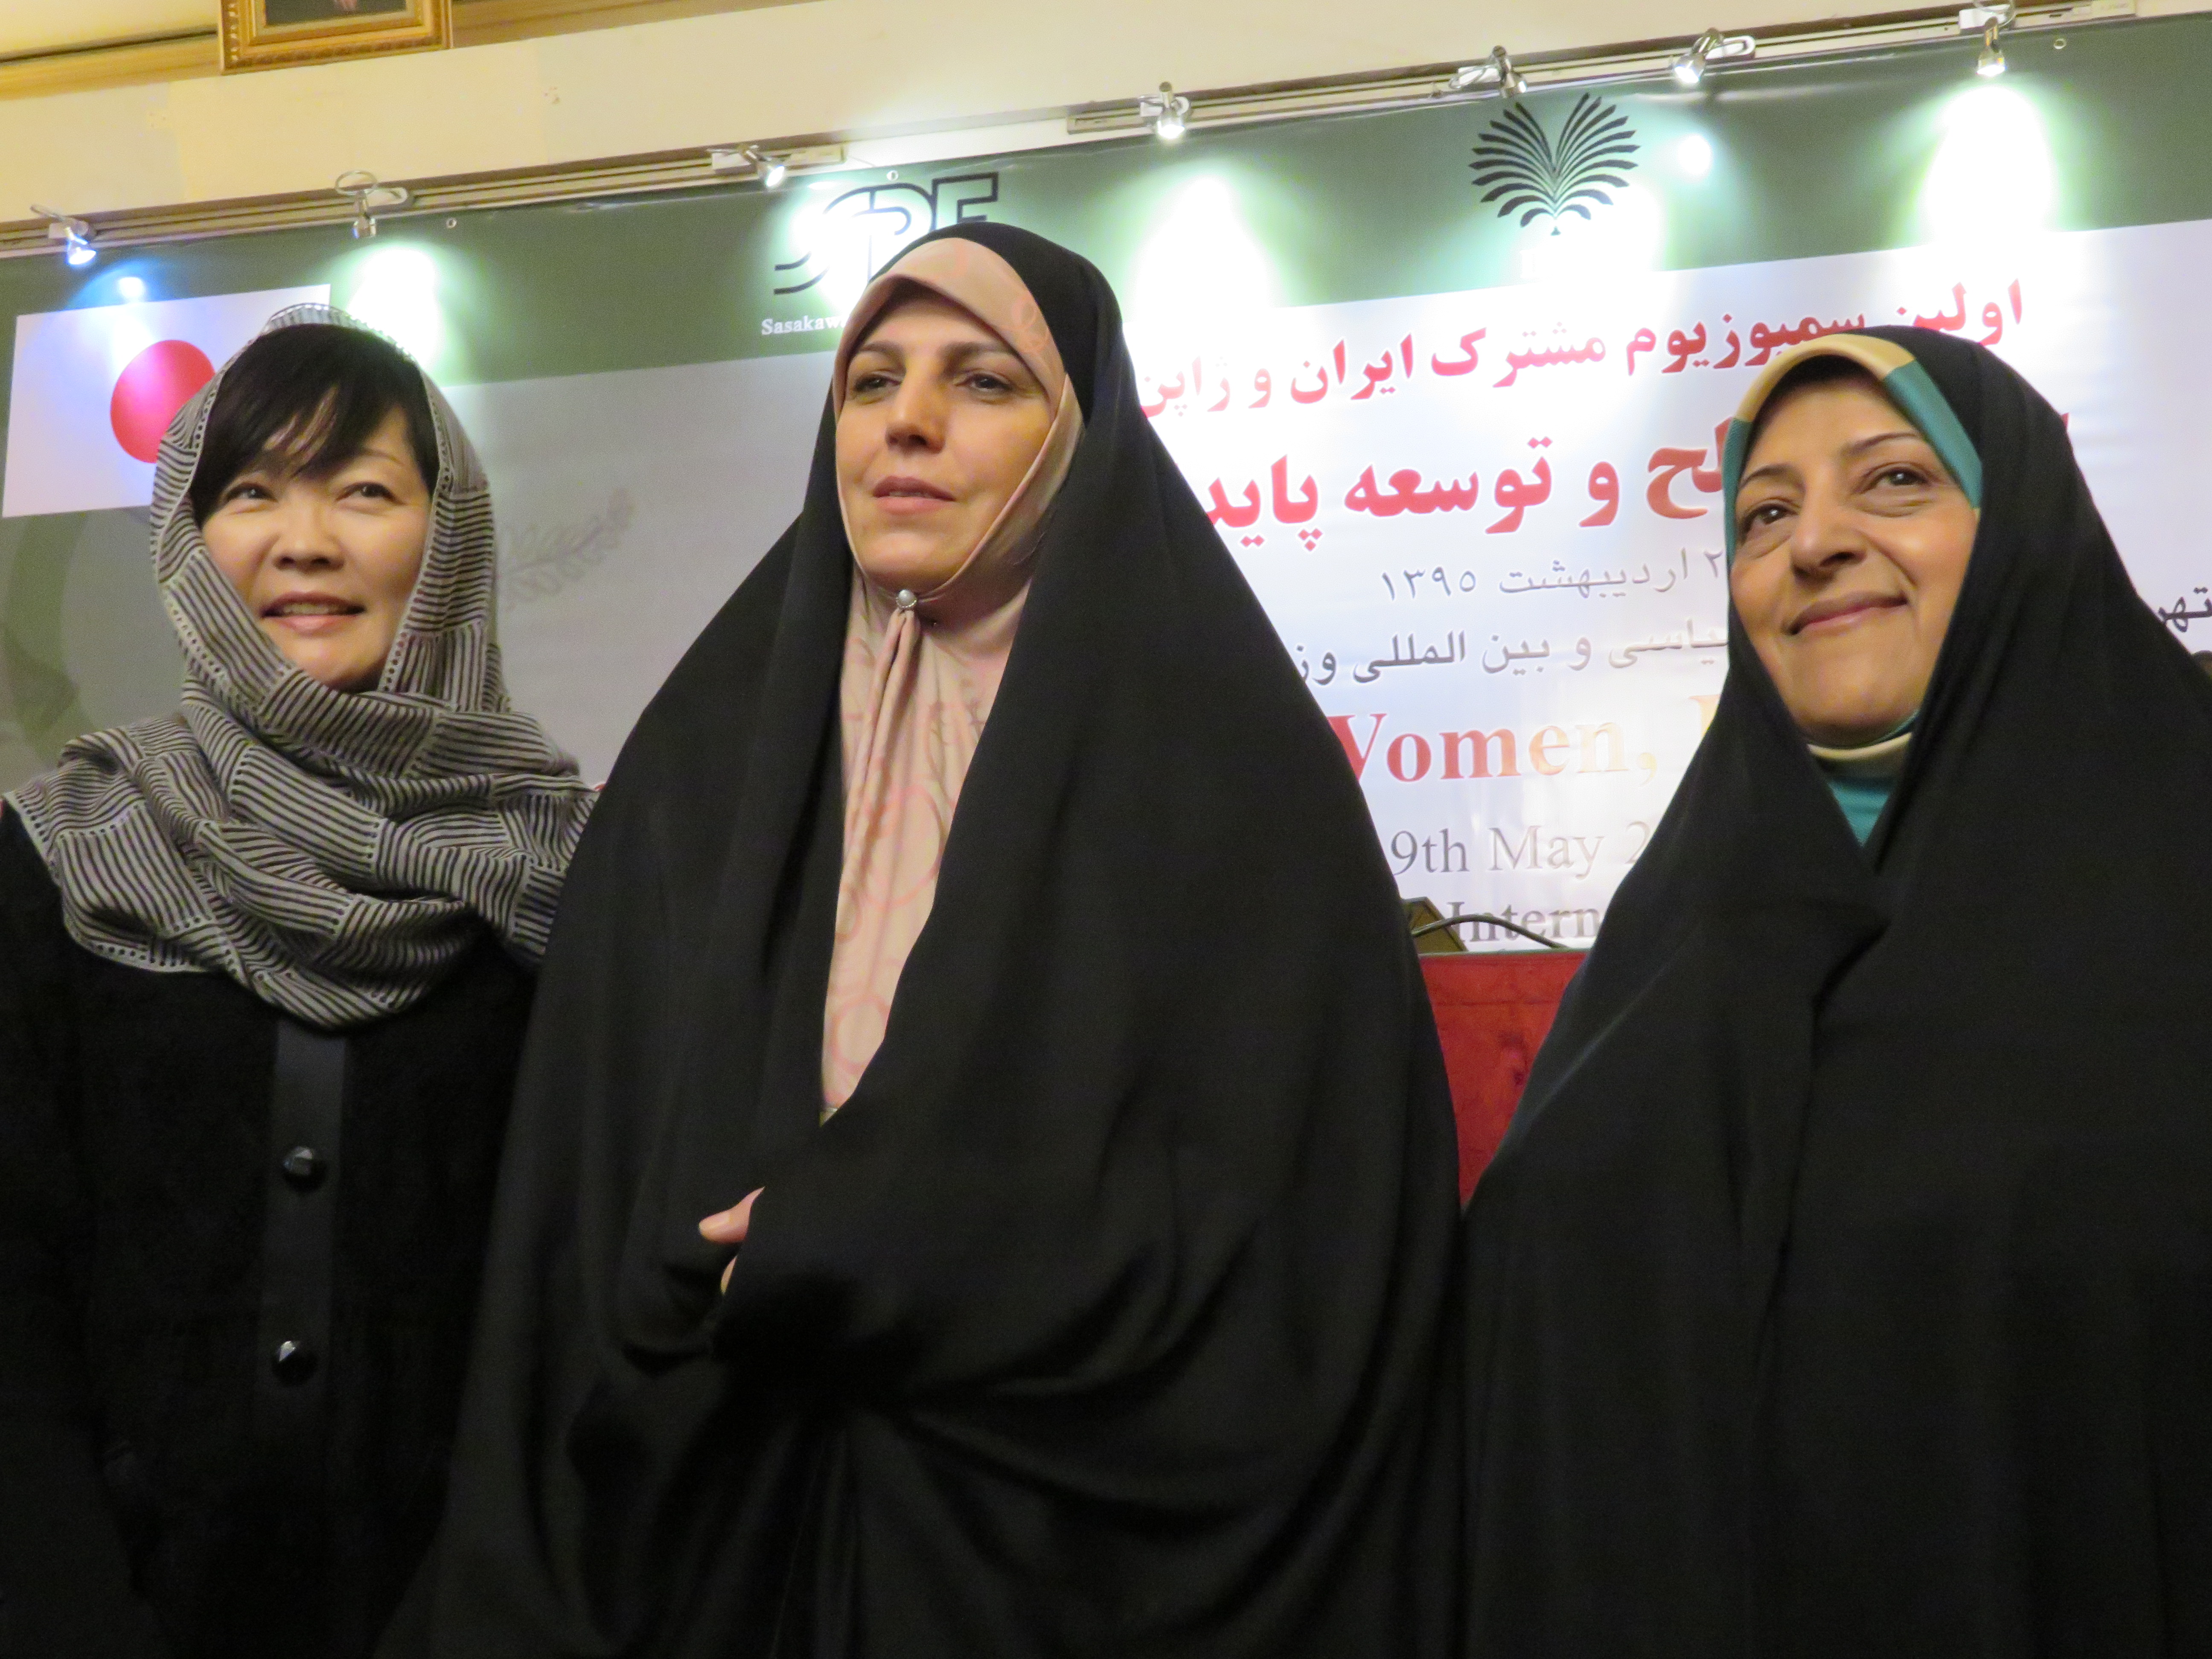 【事業報告】&lt;br /&gt;国際シンポジウム「平和と持続可能な開発における女性の役割」を開催いたしました&lt;br /&gt;2016年5月9日開催　於テヘラン